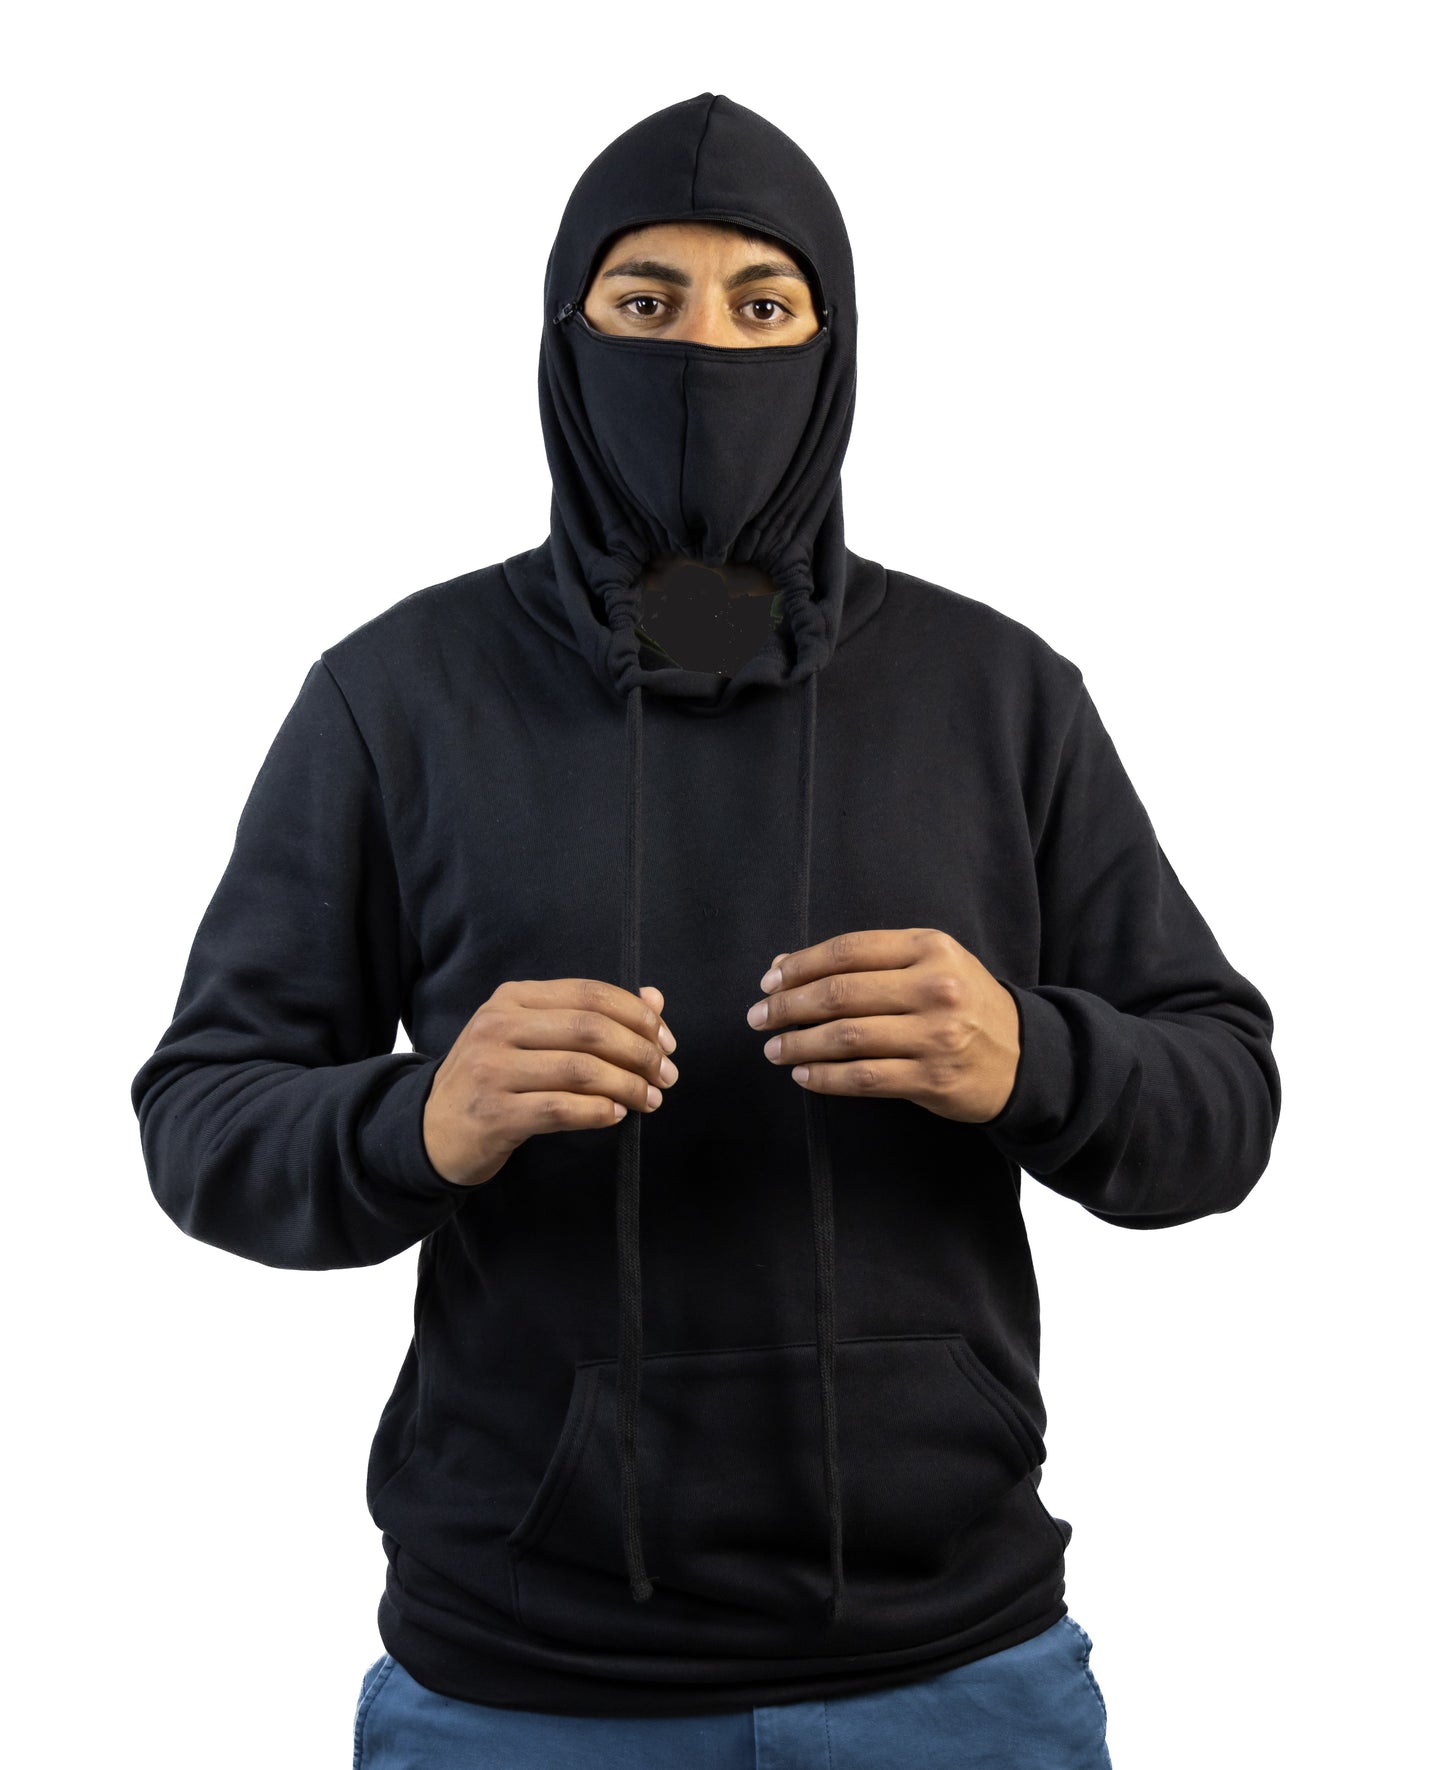 Hoodie Mask Black Pull-over Sweatshirt